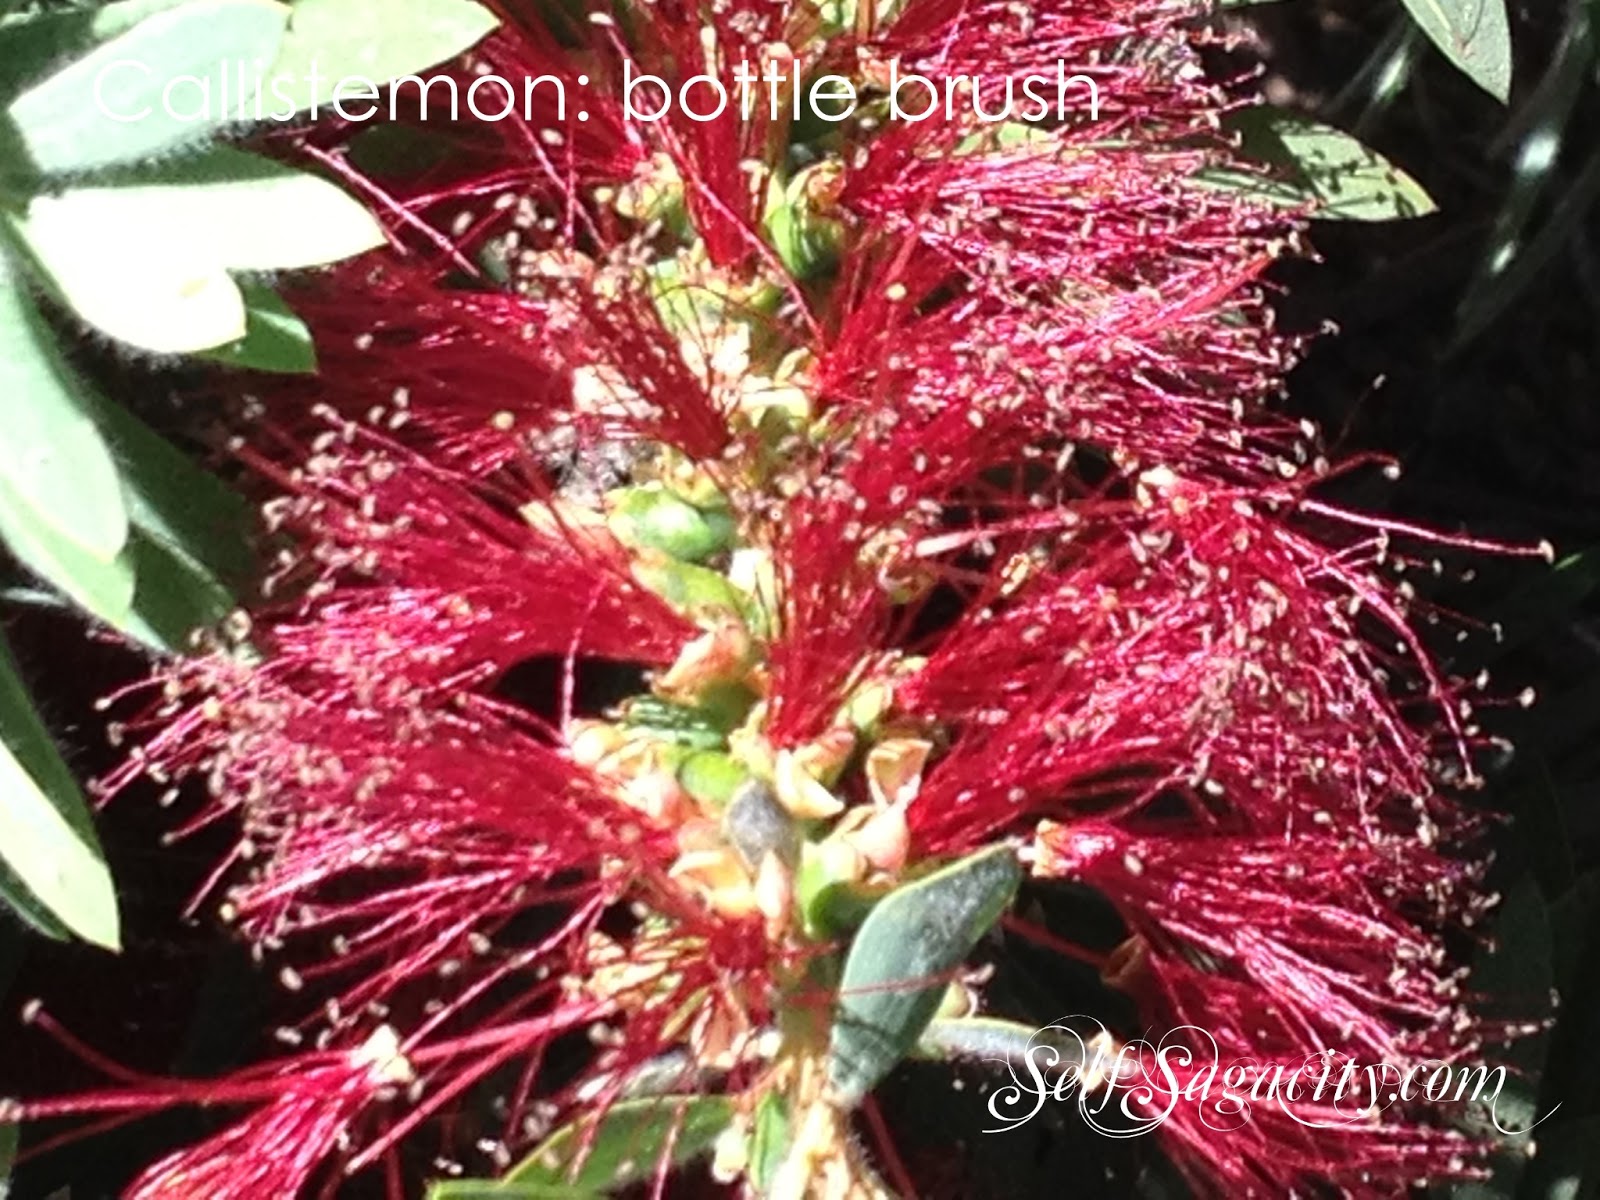 Red Callistemon: Red bottle brush flowers